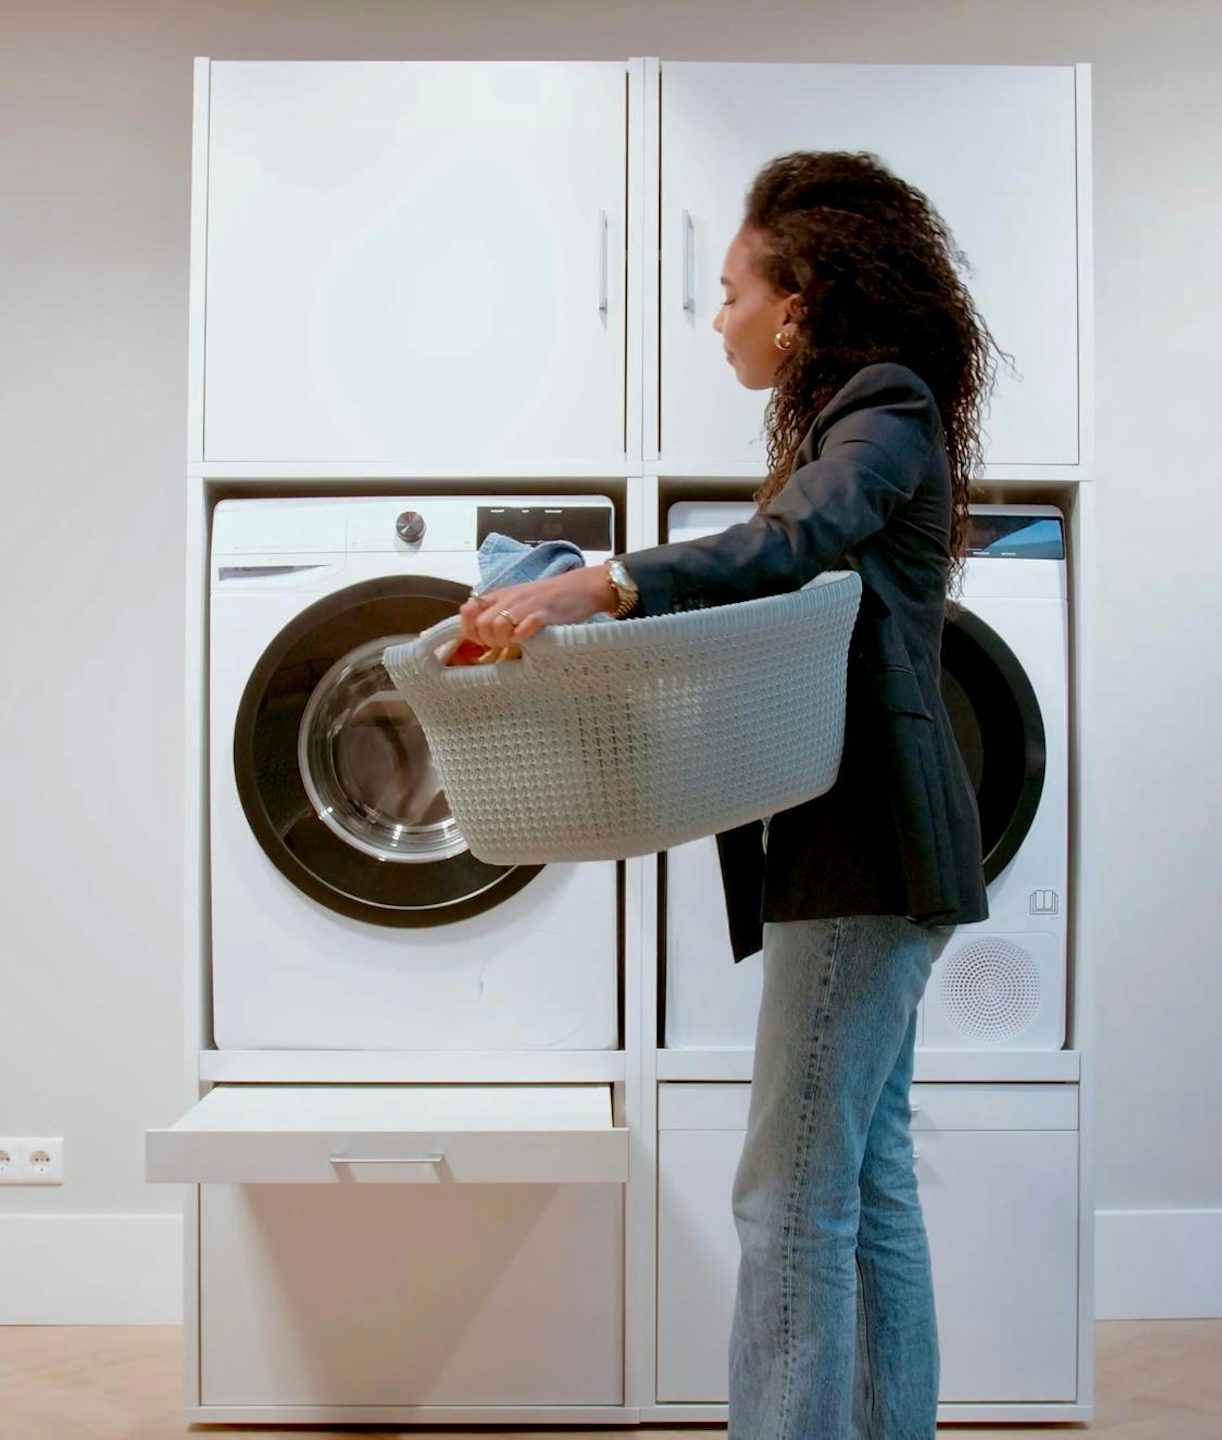 Waschturm gibt Ideen für Waschküchen für Waschmaschine und Trockner nebeneinander